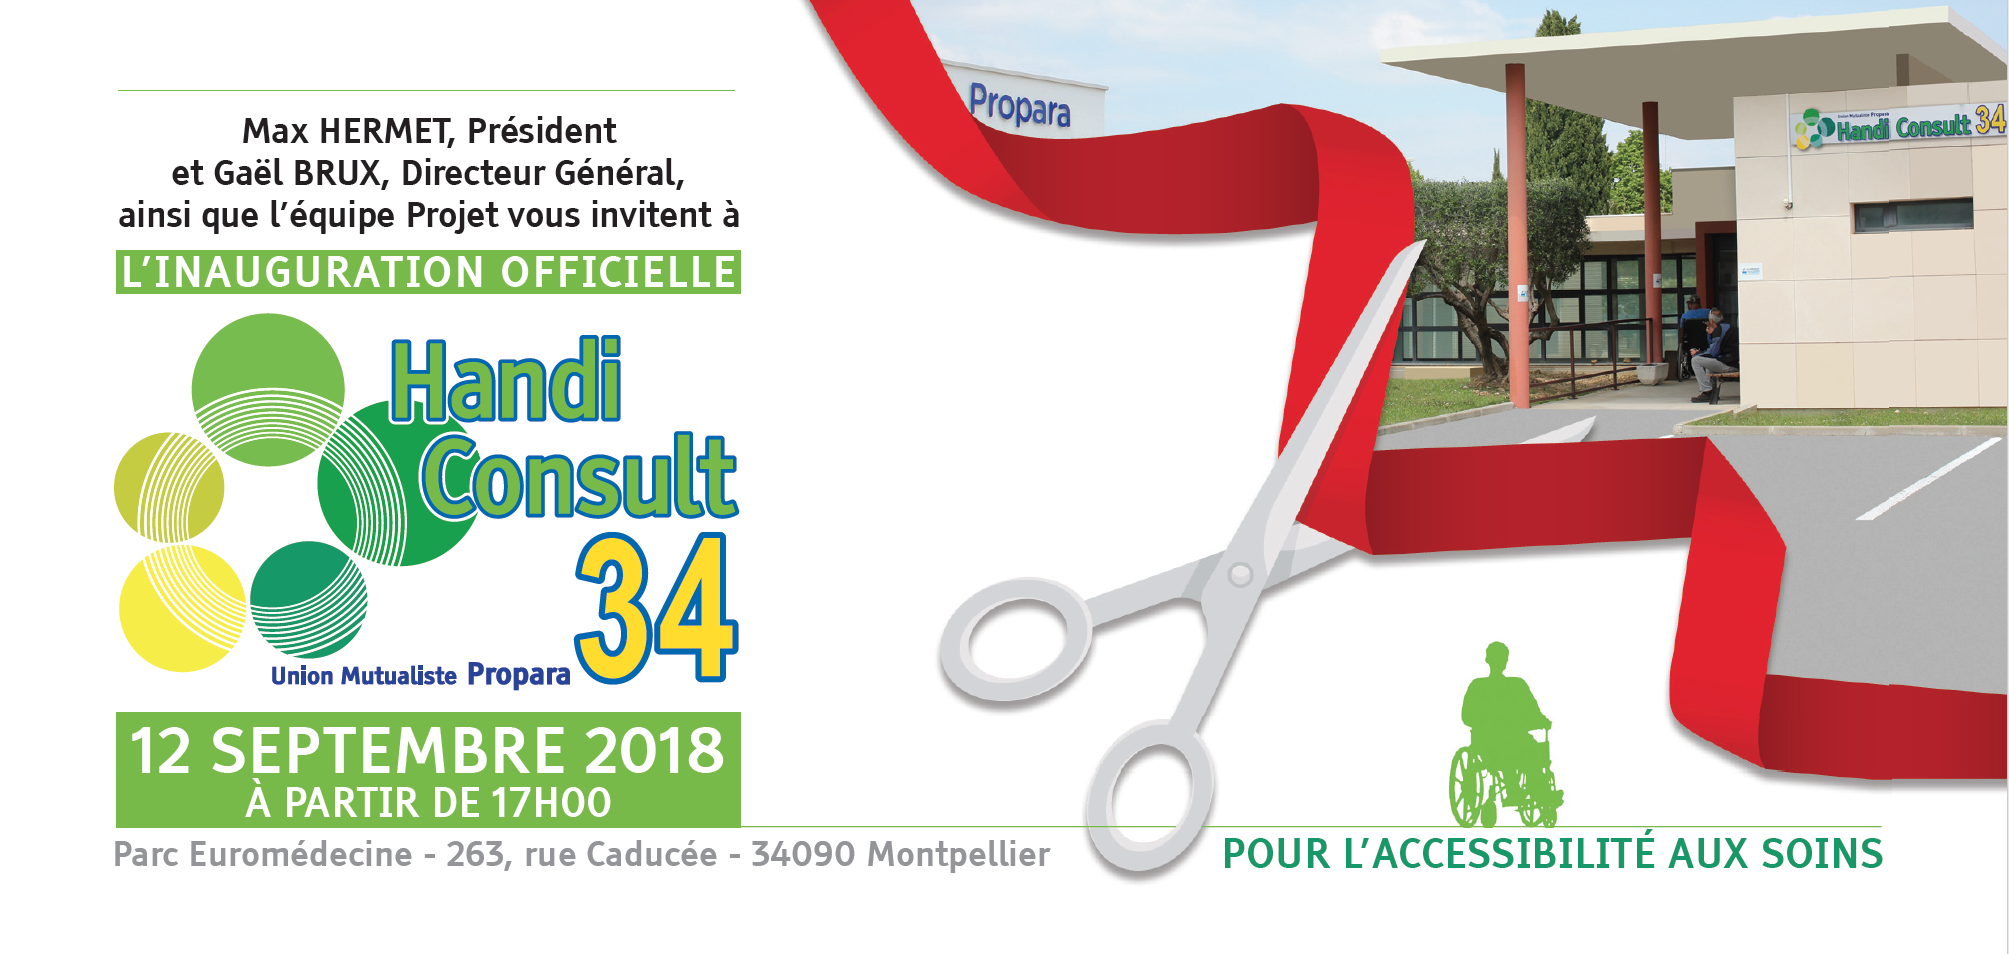 Invitation ingaururation officielle Handicap Consult 34 le 12 septembre 2018 à 17h l'Union Mutualiste Propara, parc euromédecine, 263 rue Caducée, 34090 Montpellier